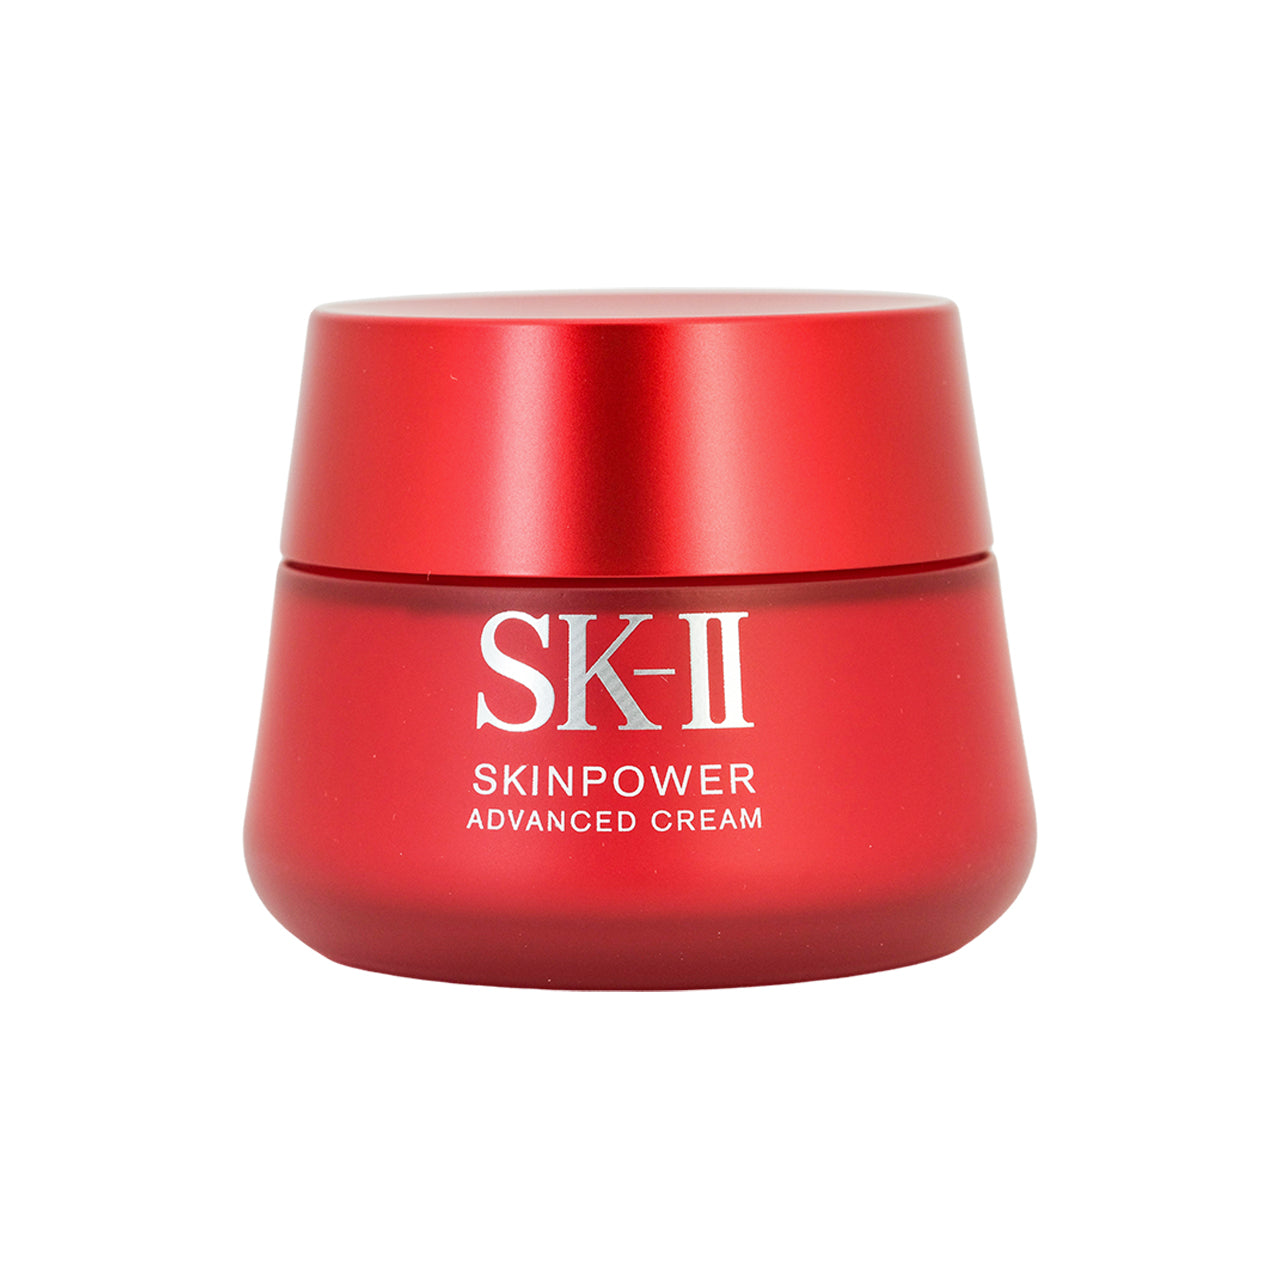 SK-II Skinpower Advanced Cream 100g | Sasa Global eShop